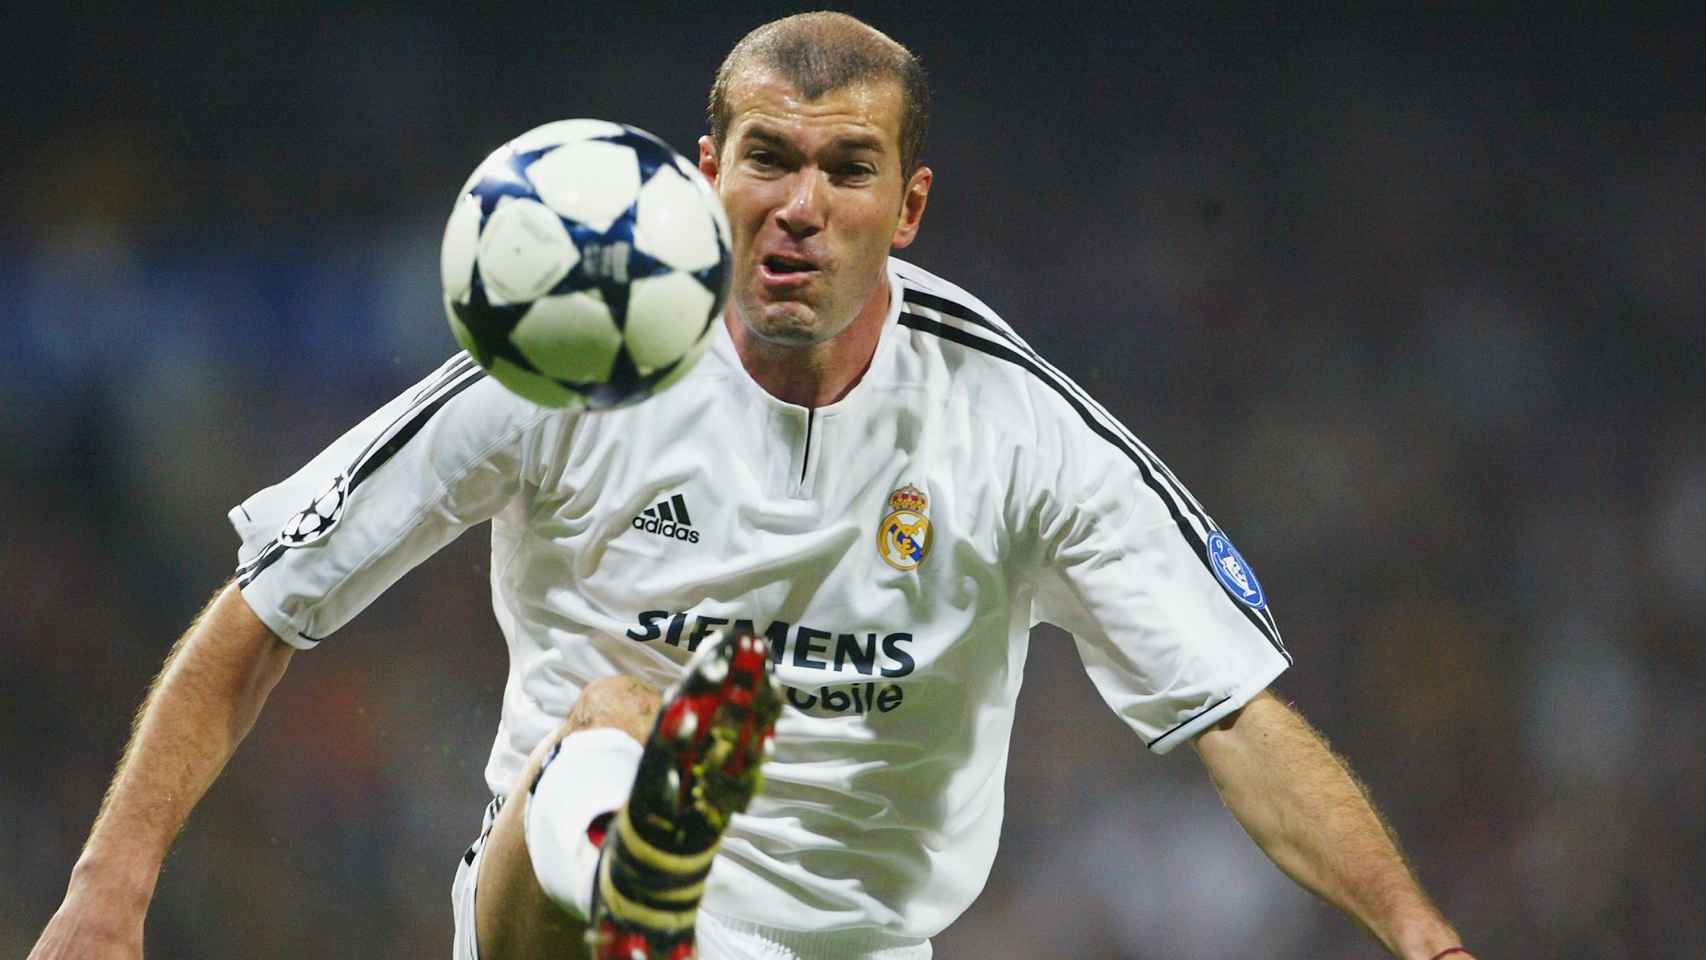 Resultado de imagen para Zinedine Zidane real madrid